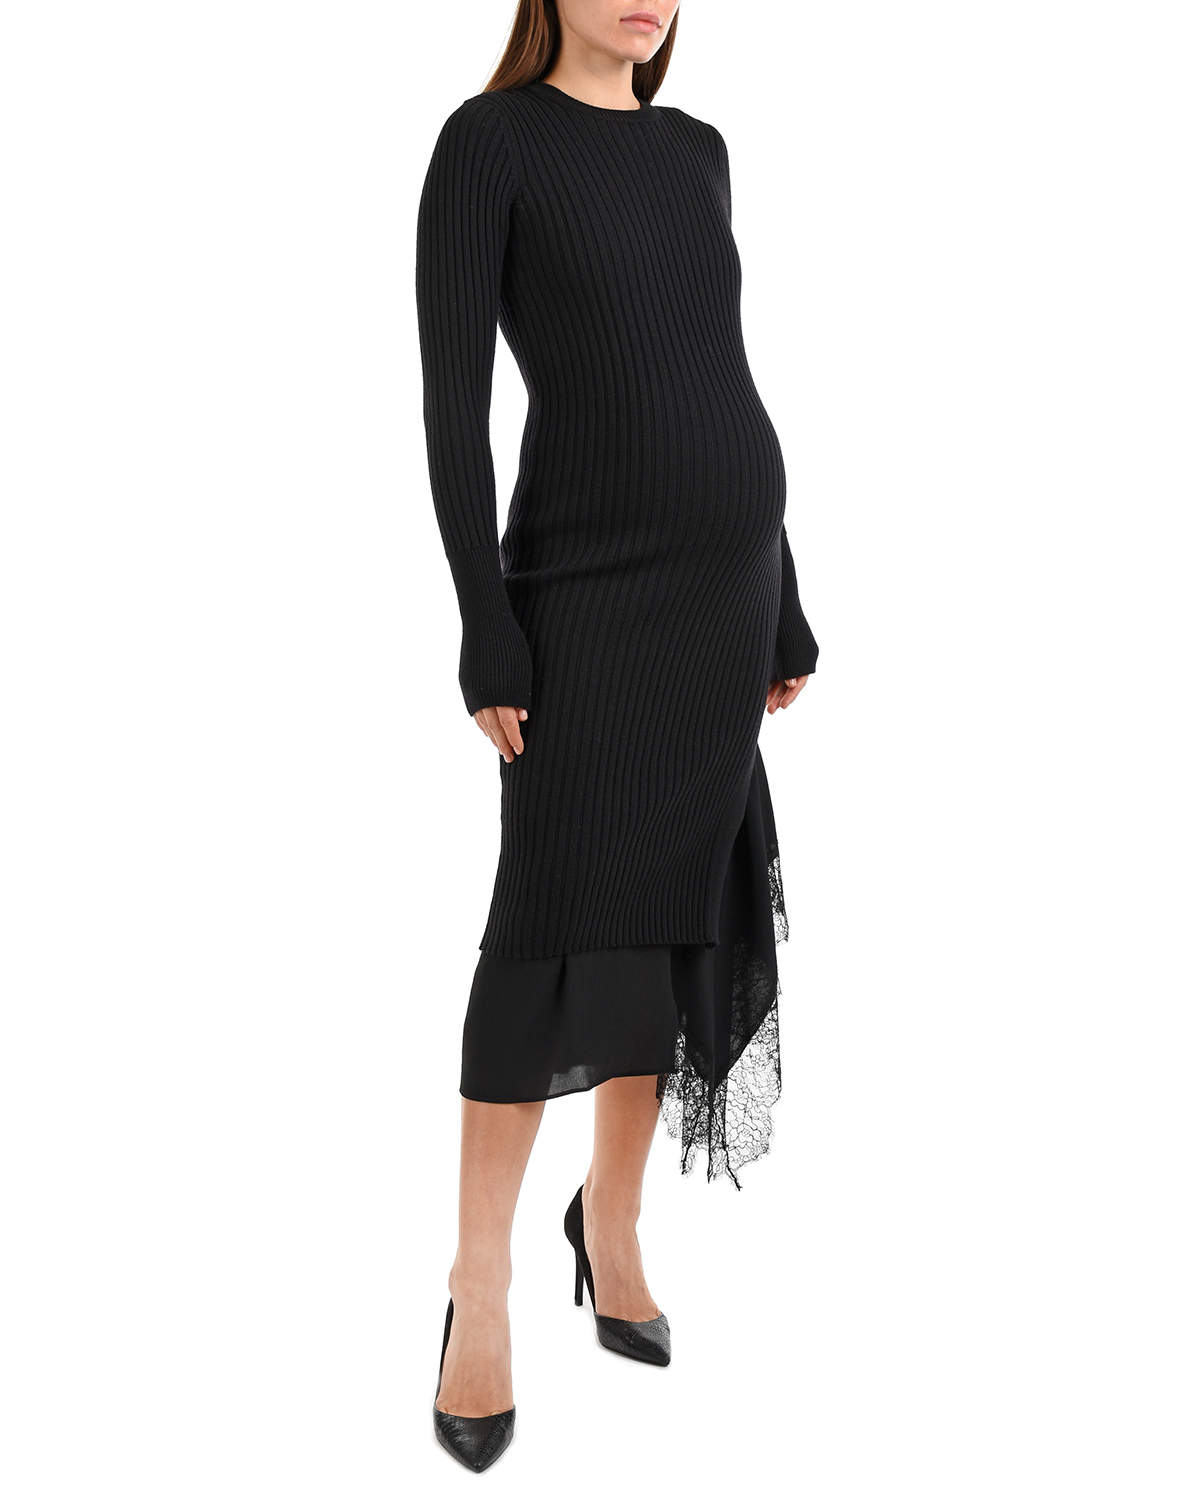 Черное платье 2 в 1 No. 21, размер 42, цвет черный - фото 4